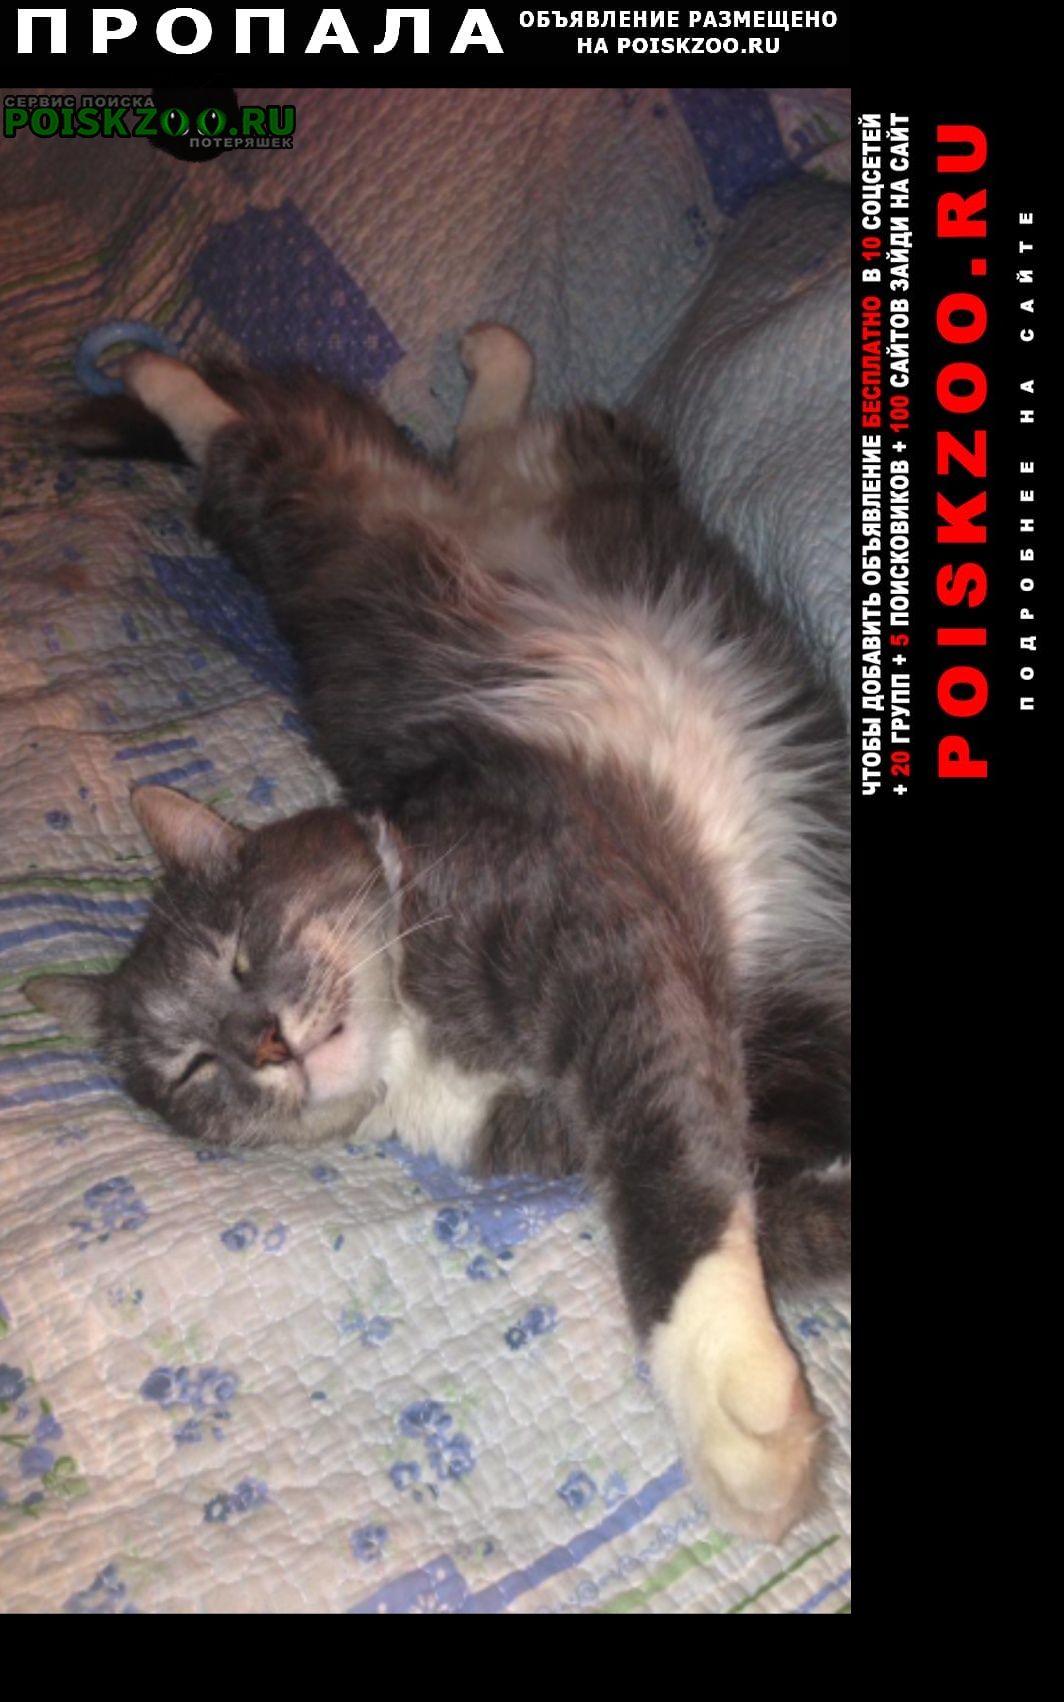 Пропал кот серый пушистый, очень крупный Ростов-на-Дону